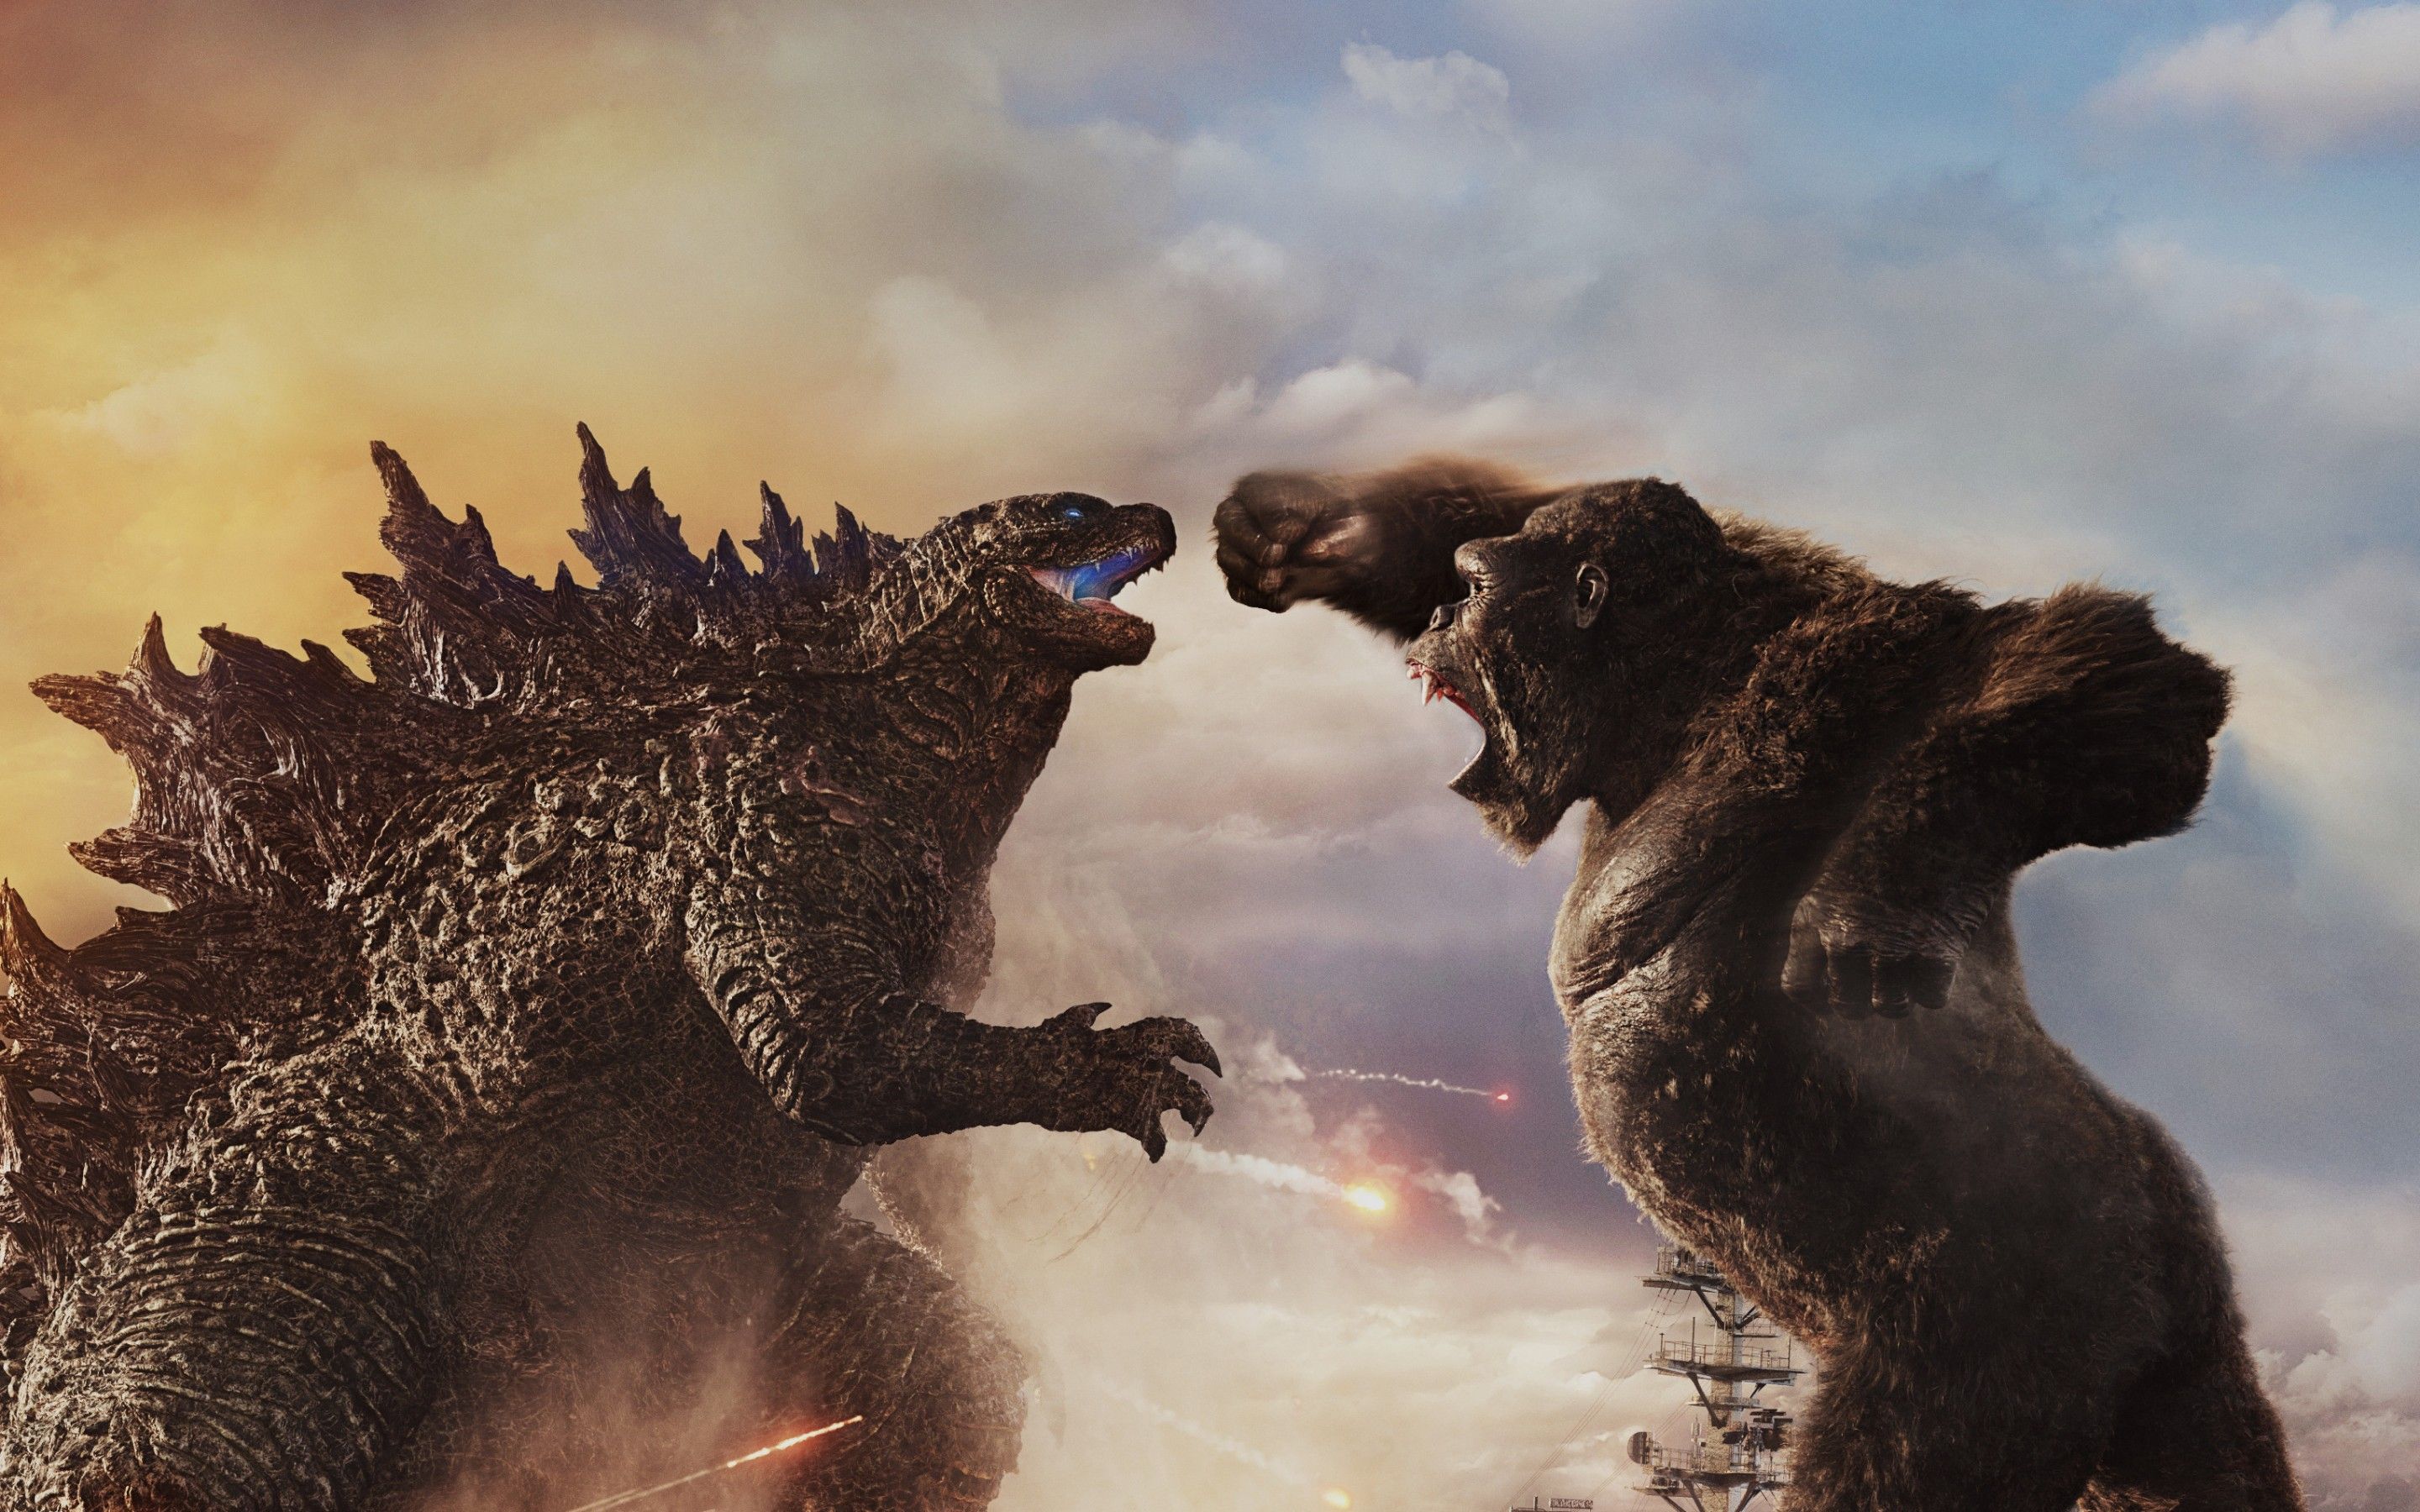 Godzilla vs Kong 4K Wallpaper, 2021 Movies, Movies